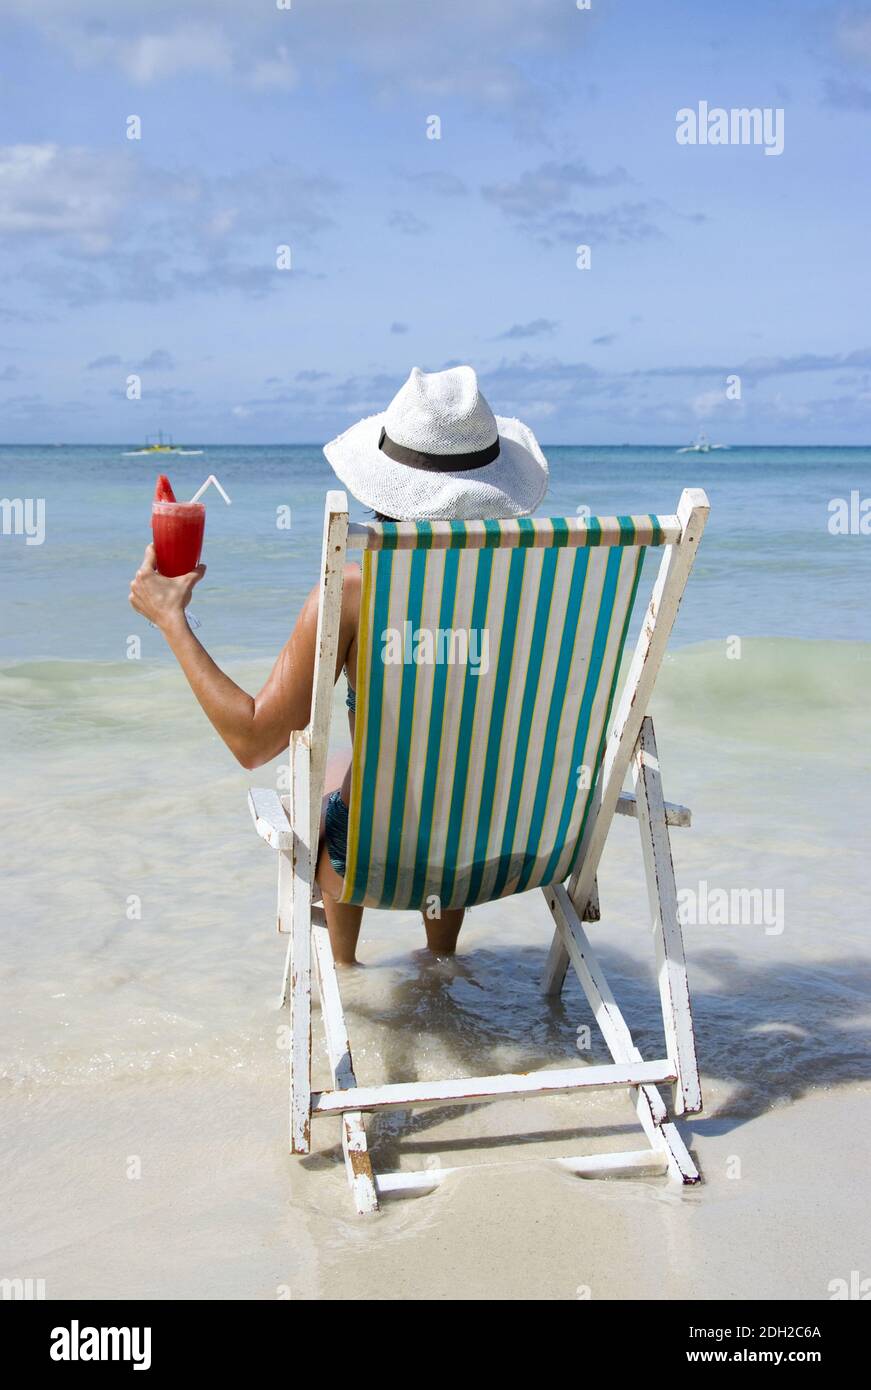 Frau auf Soinnenstuhl sitzt am Strand und geniesst einen Cocktail, Philippinen, Insel Boracay, signor: Sì Foto Stock